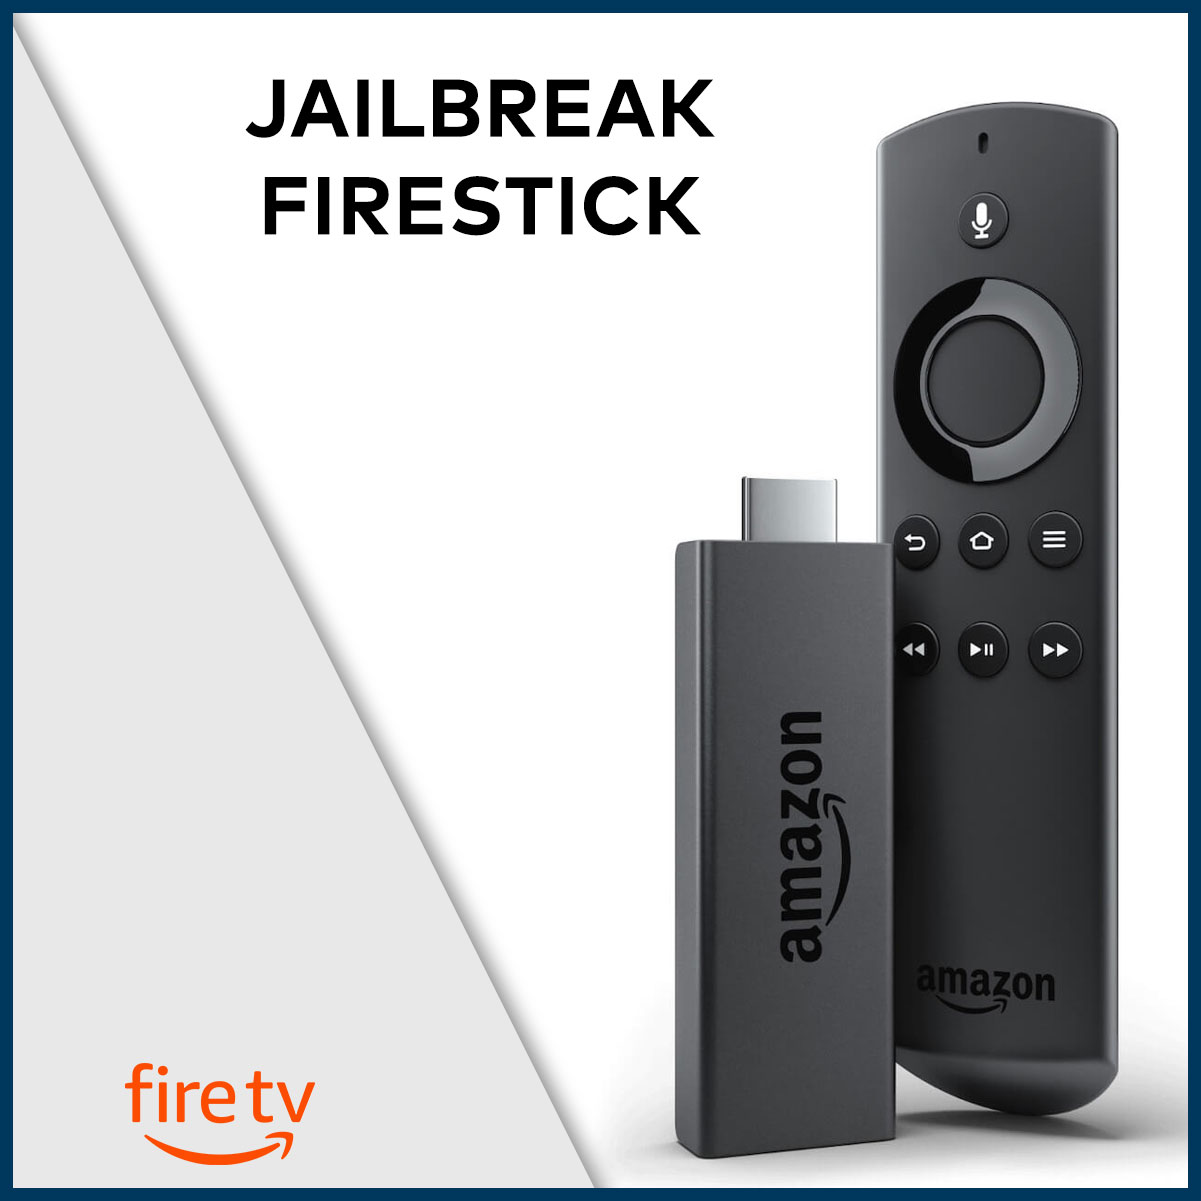 jailbreak fire stick